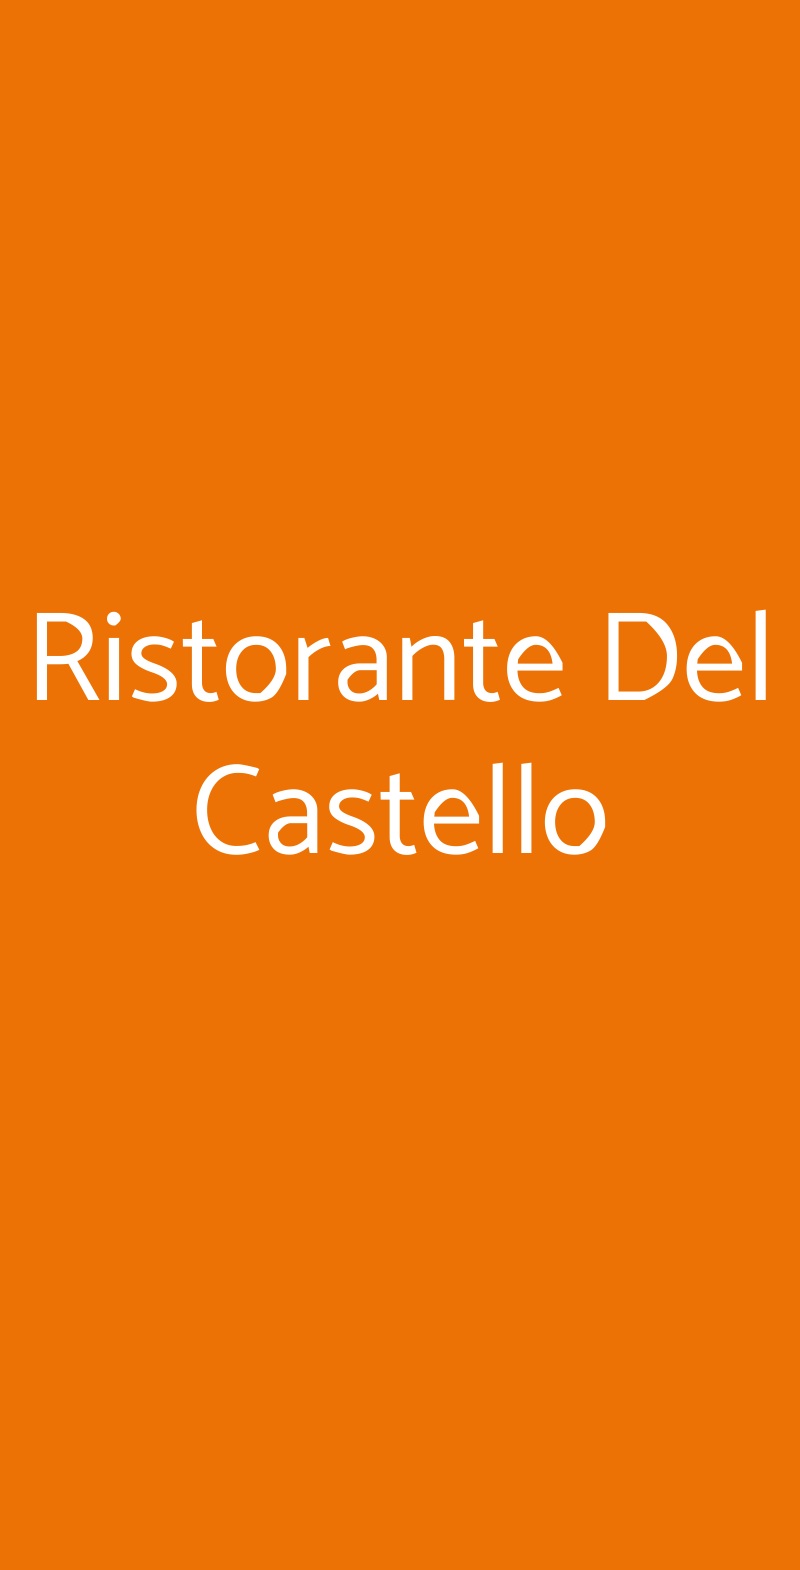 Ristorante Del Castello Cereseto menù 1 pagina